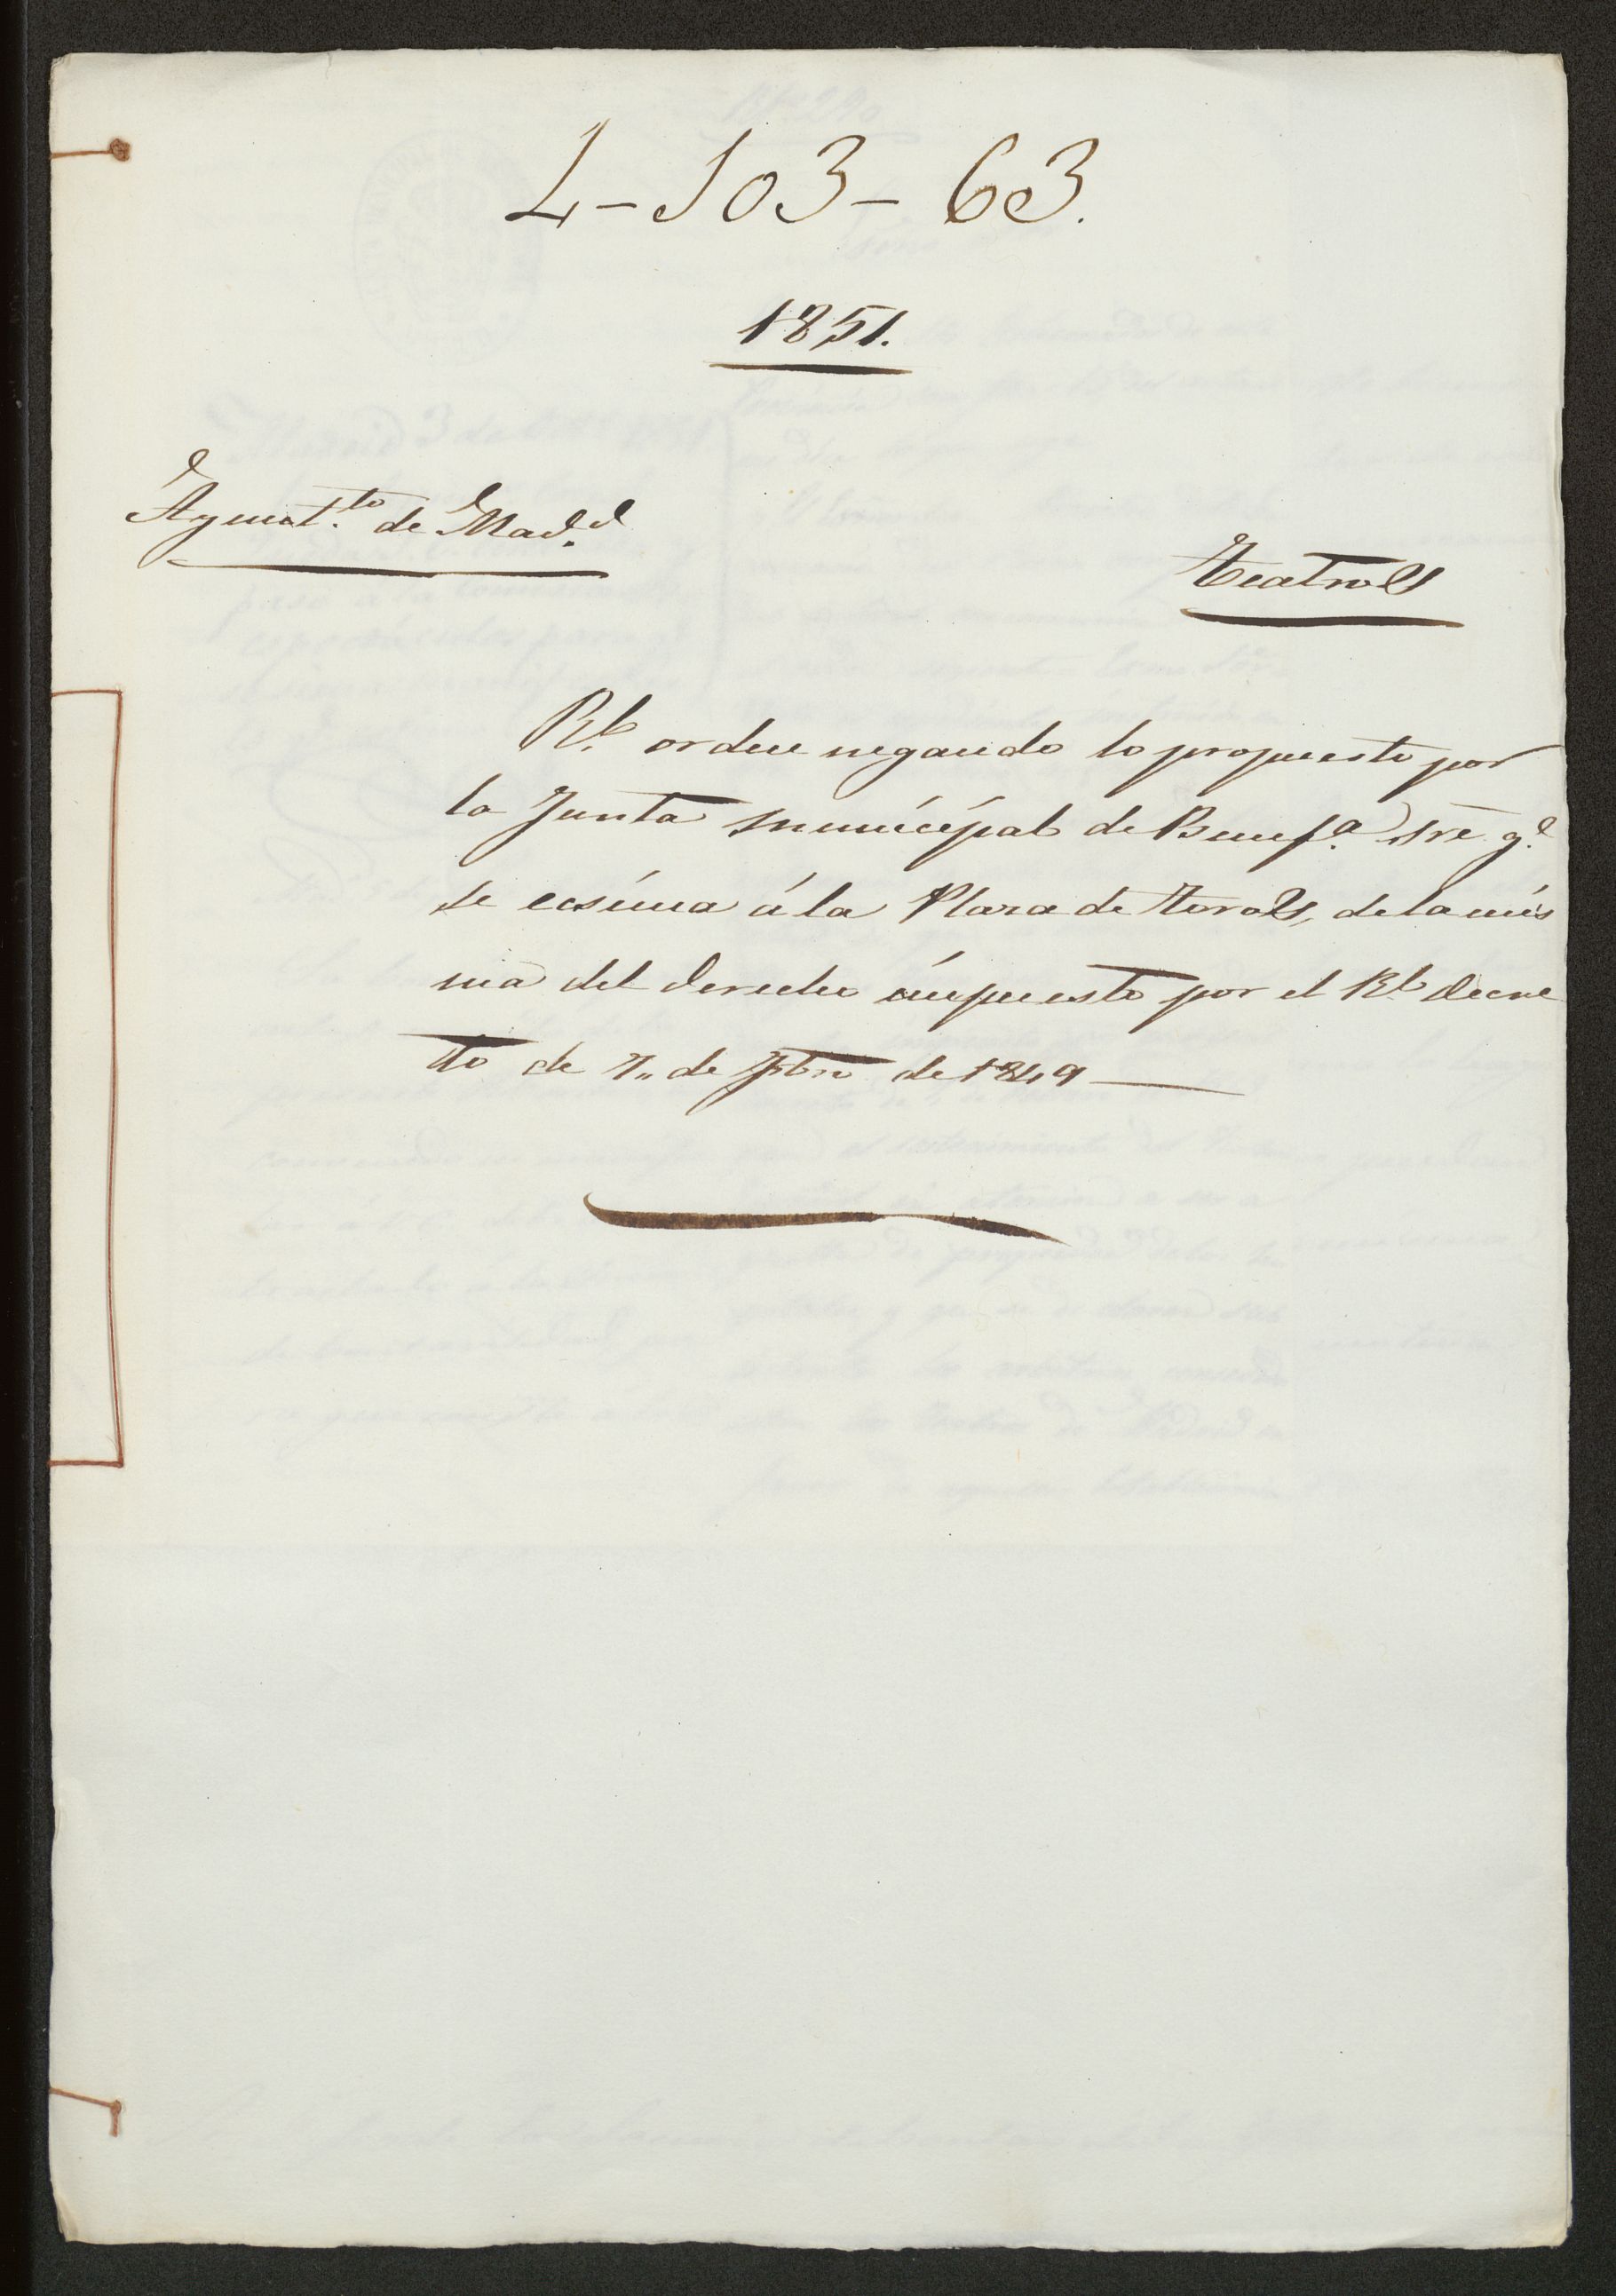 Orden negando lo propuesto por la Junta municipal de Beneficencia sobre que se exima a la Plaza de Toros de la misma del derecho impuesto por el Real decreto de 10 de febrero de 1849.